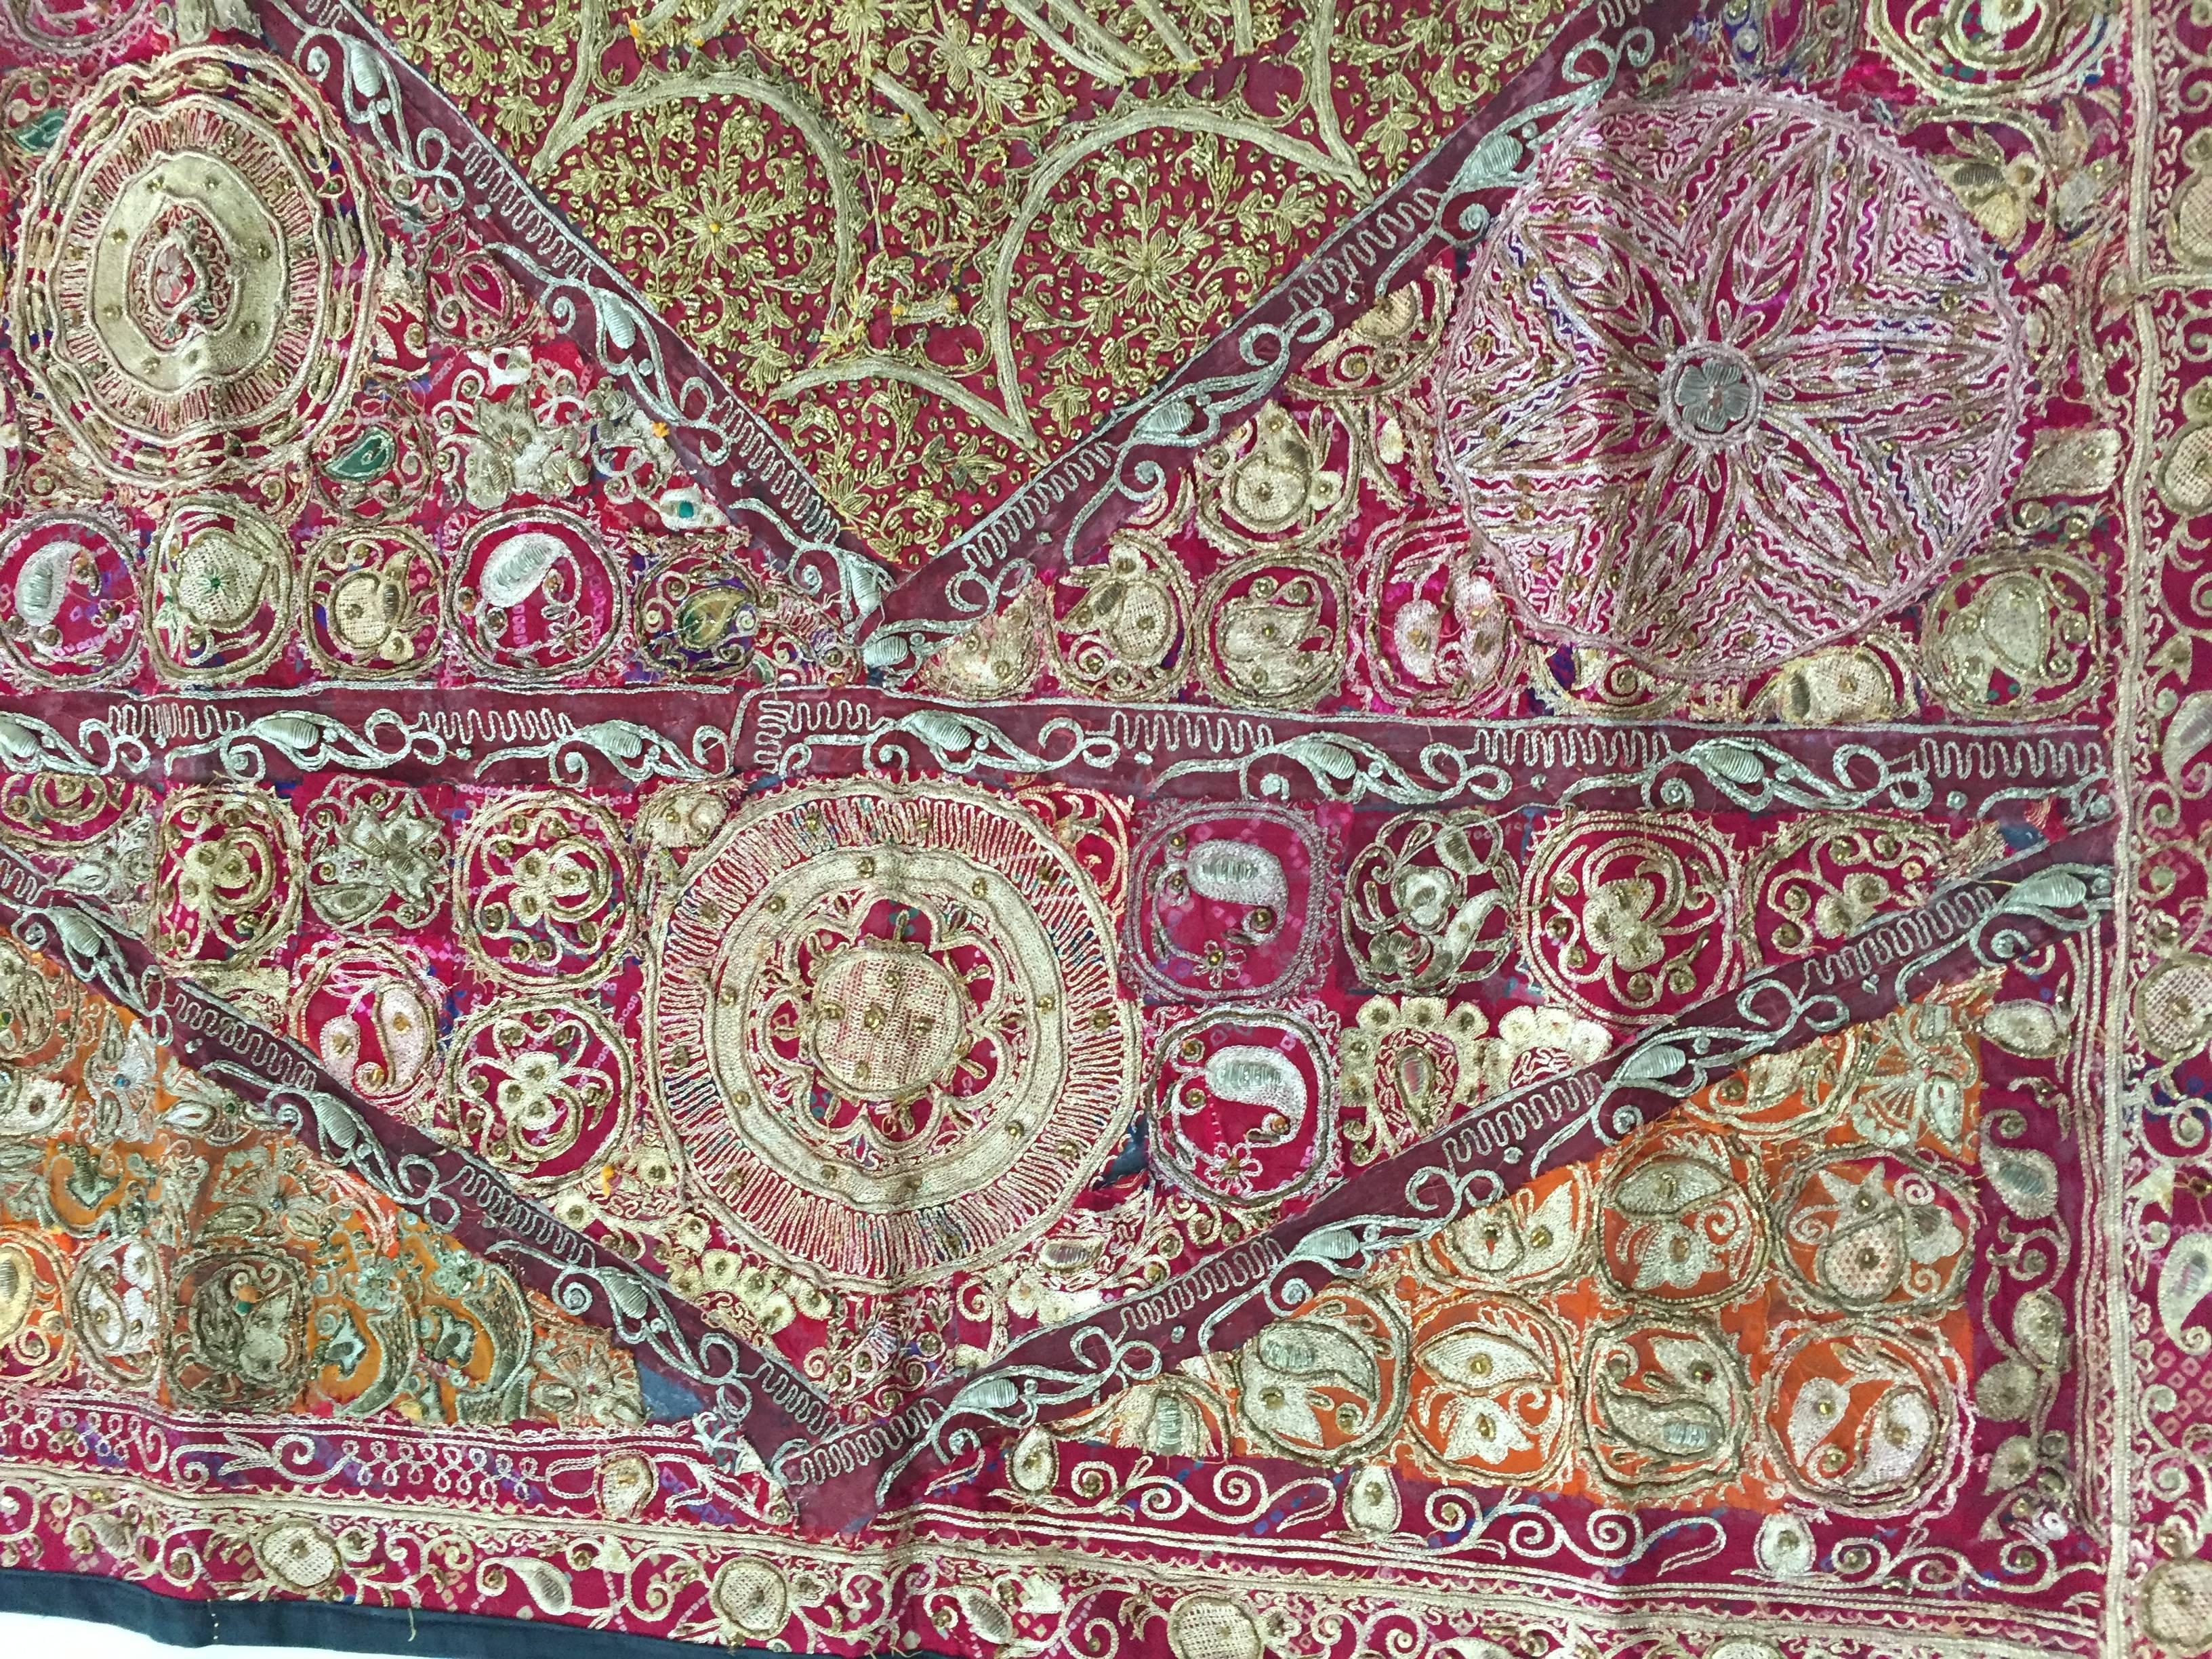 Handgestickte und gequiltete Textilien aus Nordindien.
Wandteppich aus Mogulseide und Metallfäden.
Mit schwarzem Leinen unterlegt.
Die fantasievollen asiatischen Folkloredesigns dieses unverwechselbaren Quilts sind ein wahrer Sinn für künstlerische